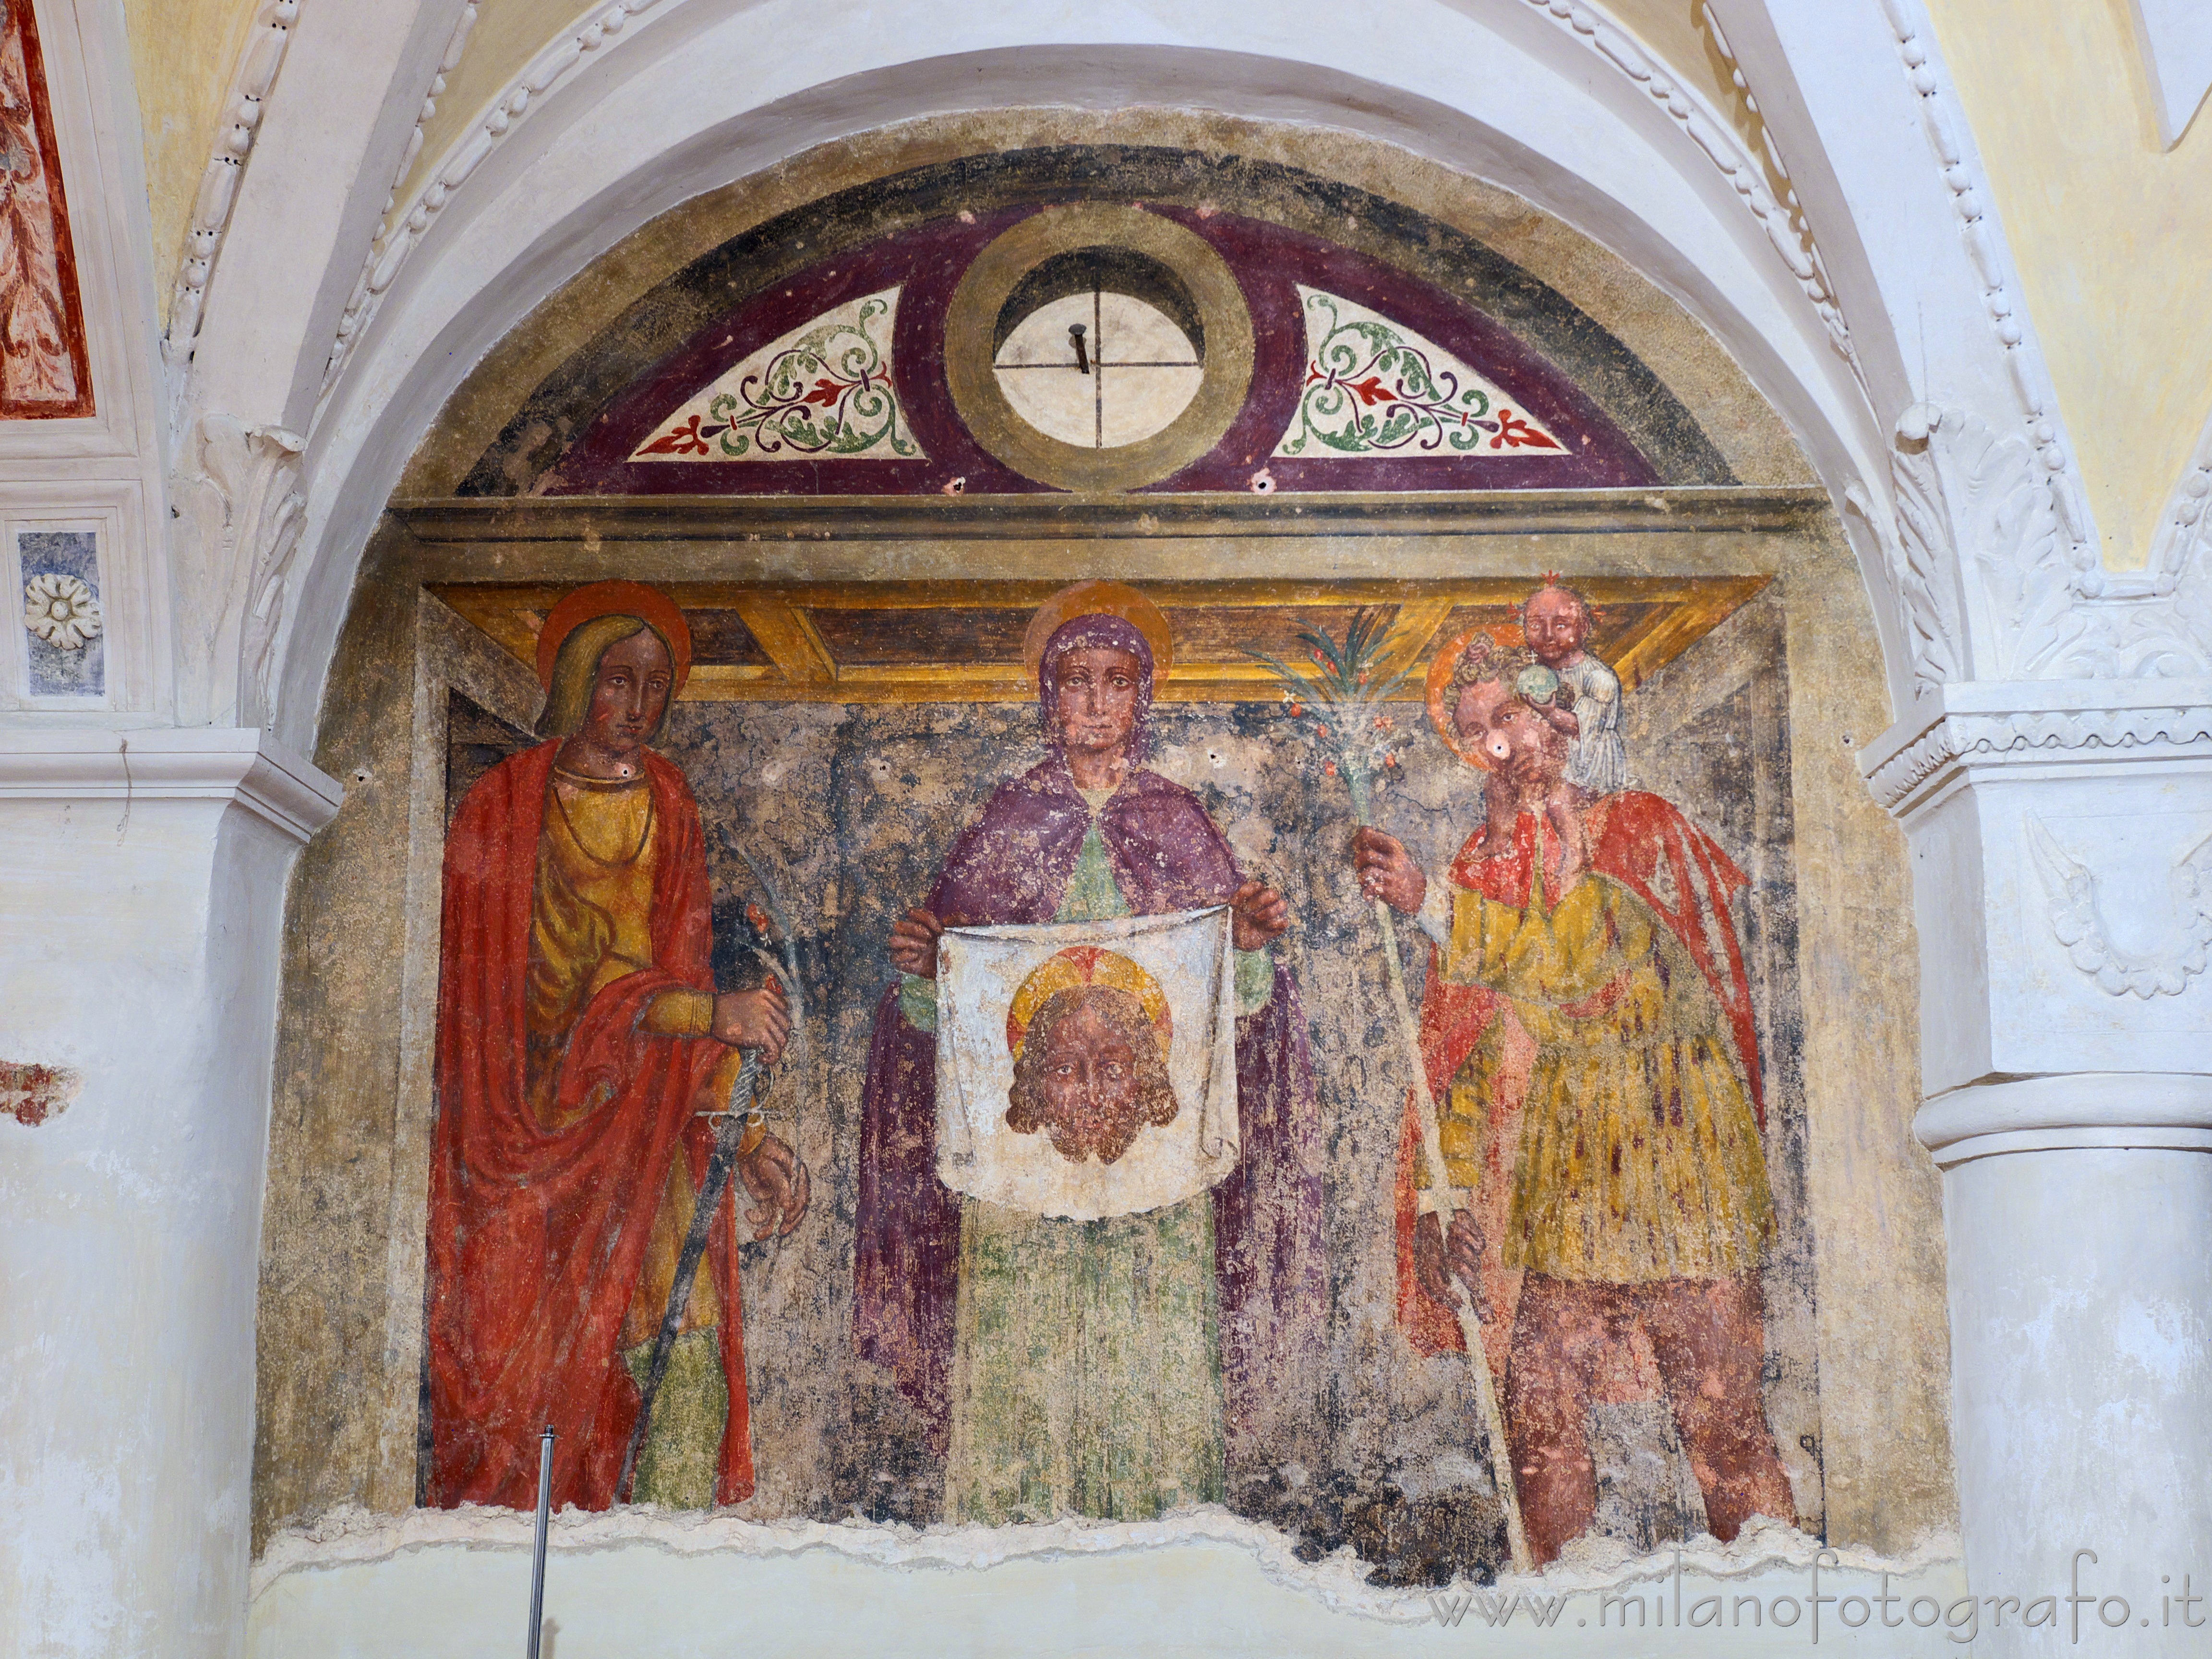 Vimercate (Monza e Brianza): Veronica fra San Cristoforo e un santo cavaliere nella Chiesa di Santo Stefano - Vimercate (Monza e Brianza)